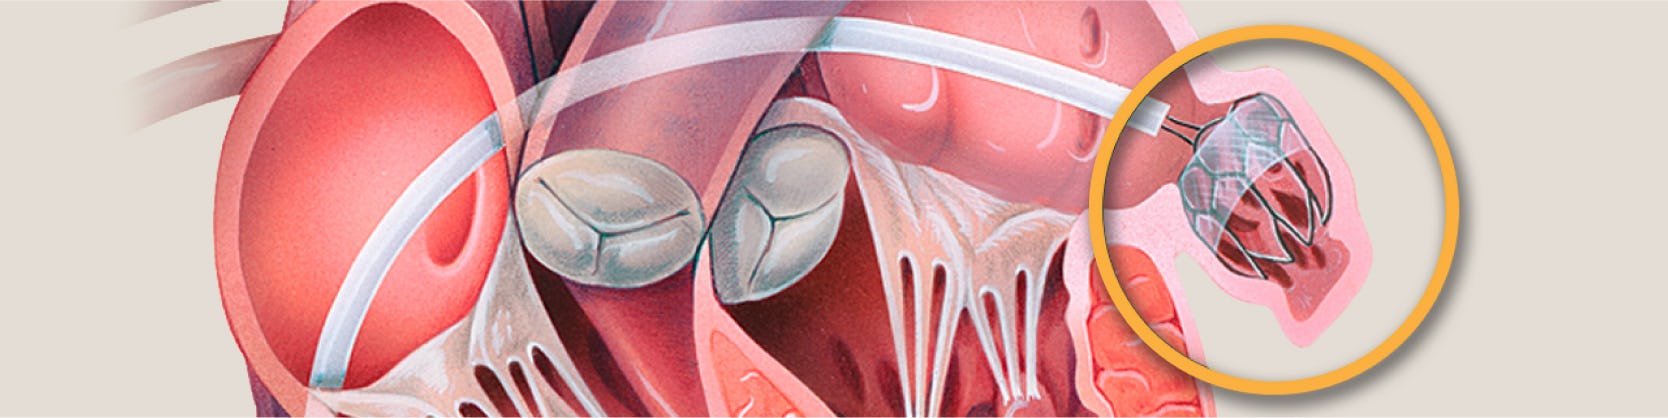 Procedura Watchman pentru Fibrilatie Atriala | MONZA ARES | Inovatie in Cardiologie